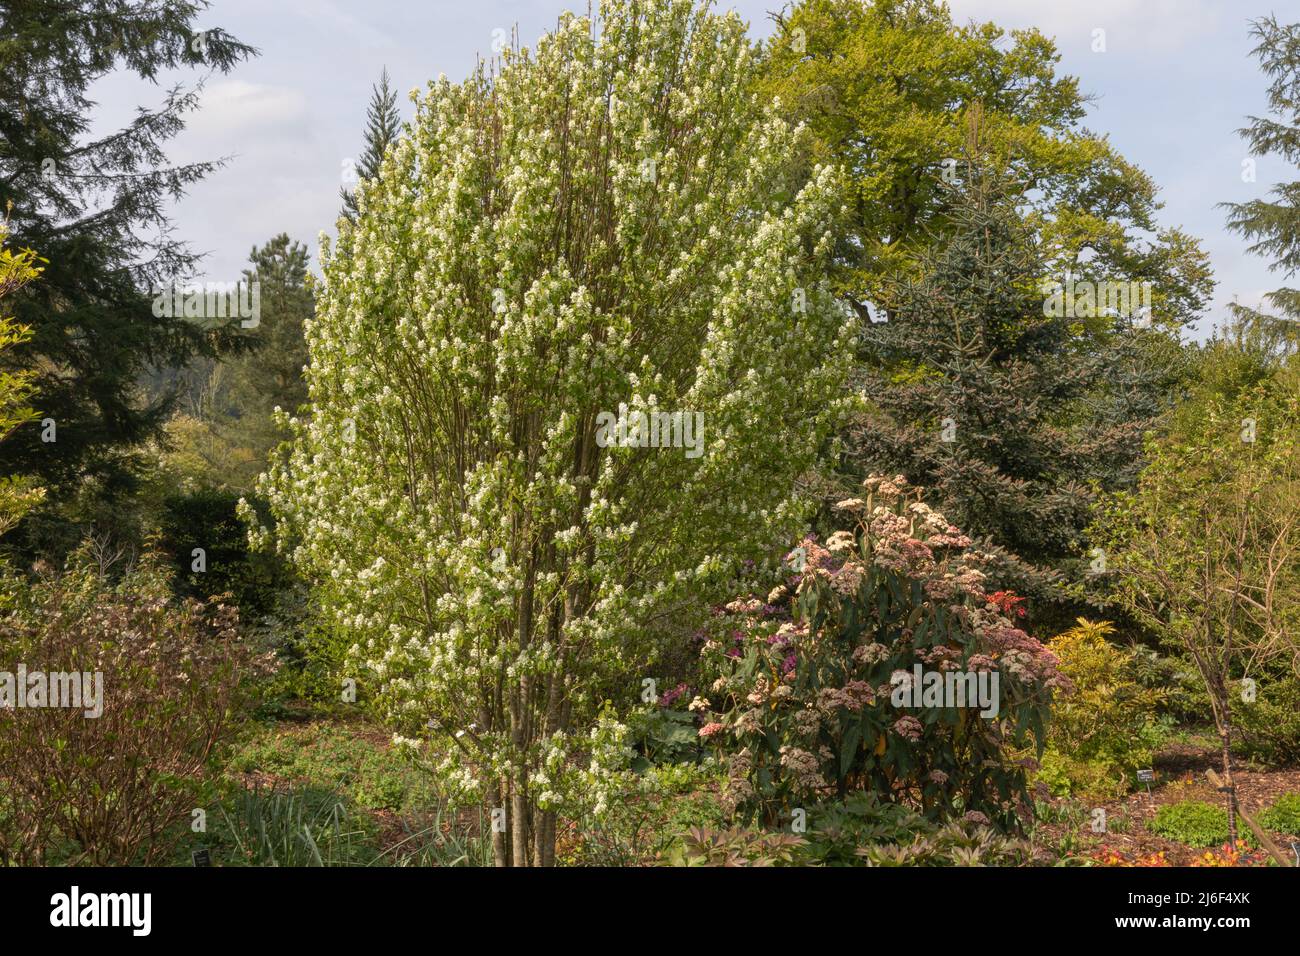 Situado en la wooland de coníferas y arbustos el obelisco amelanchier alnifolia, un pequeño árbol decidoso con flores blancas llamativas Foto de stock